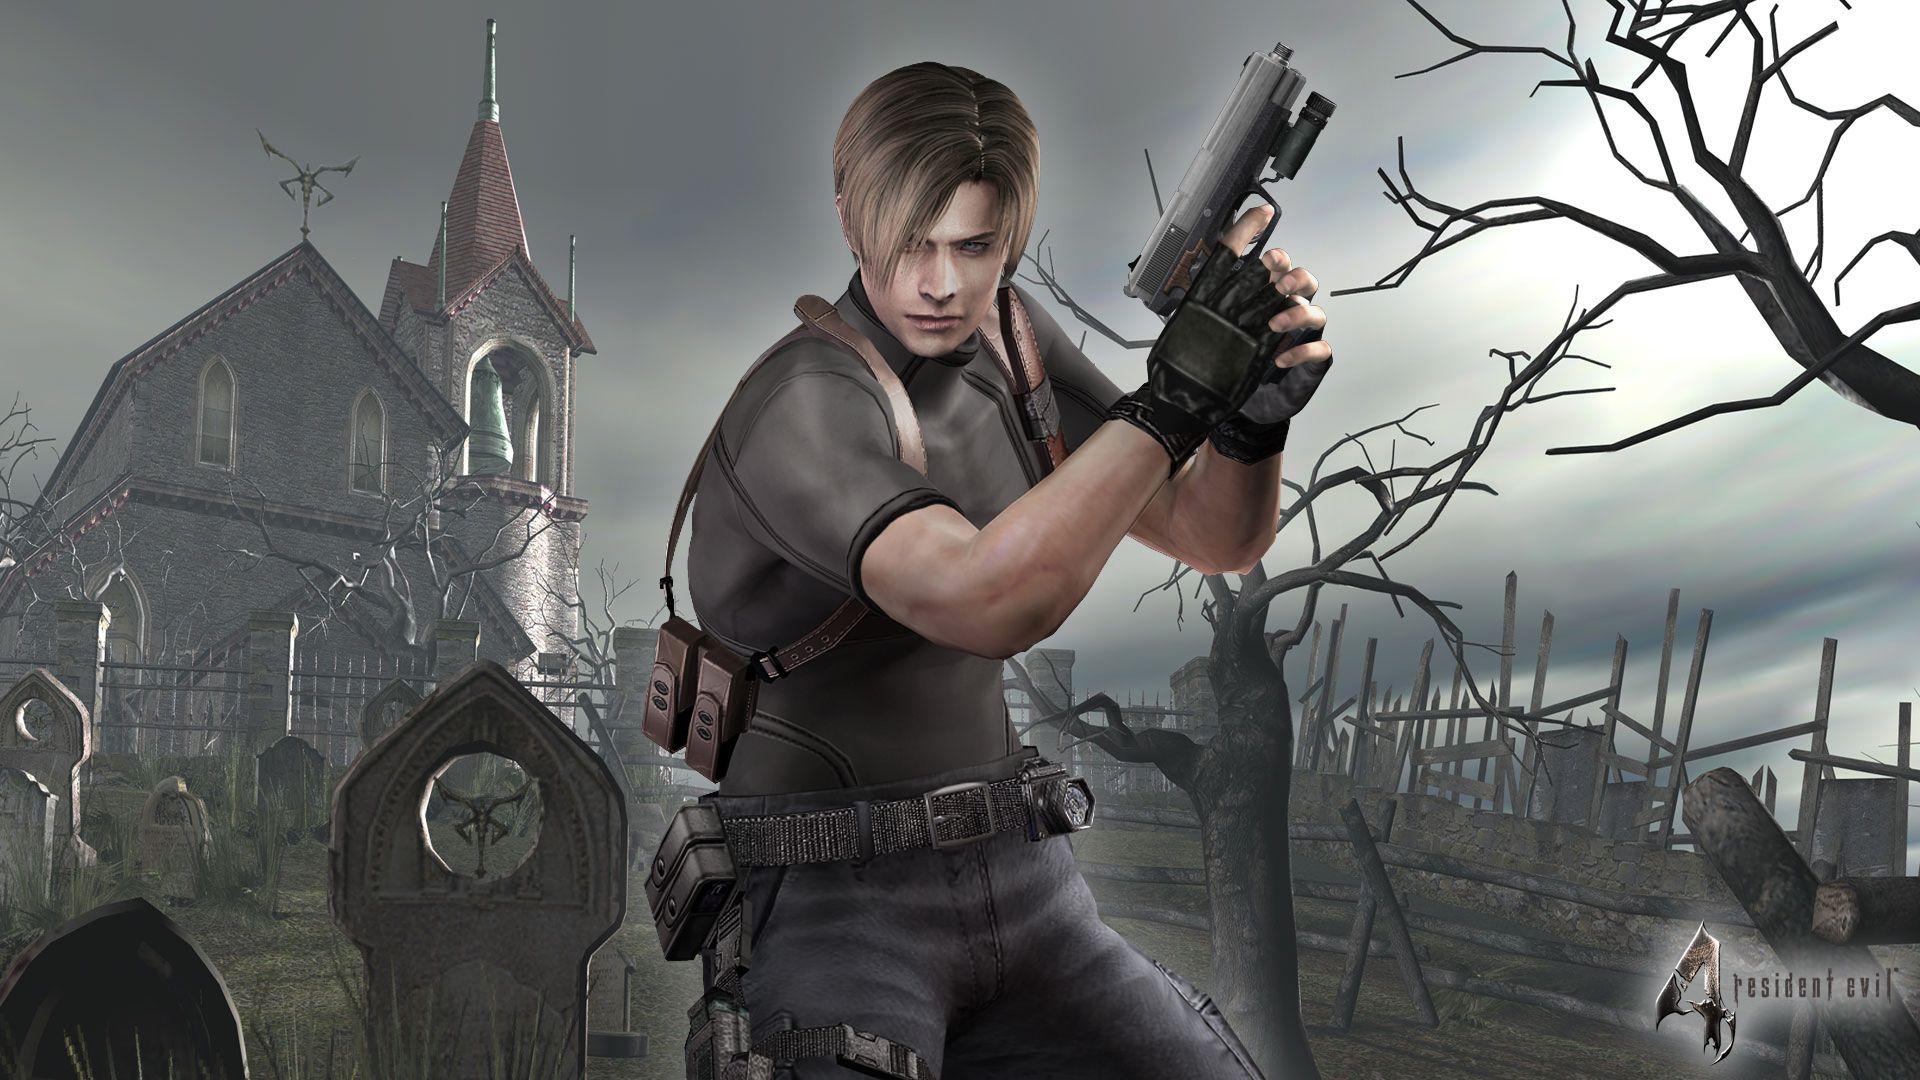 Resident Evil 4 Biohazard 4 Artwork. Steam Trading